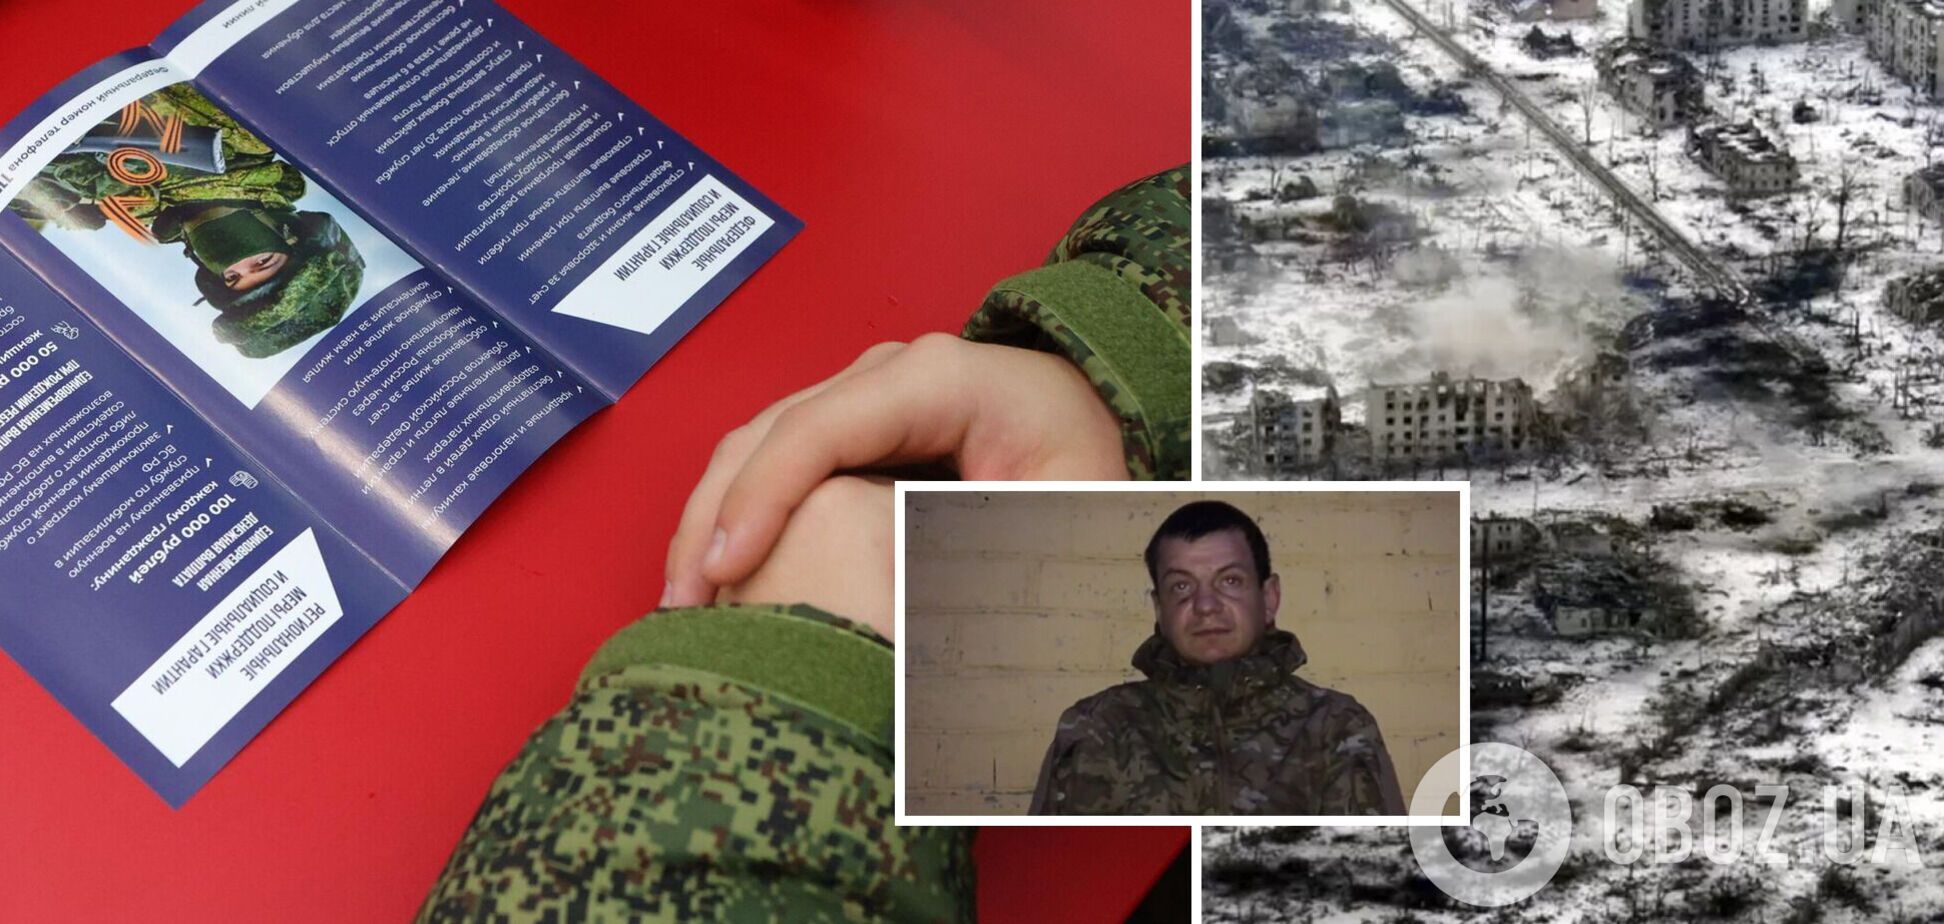 Предложили контракт в Москве: беларус рассказал, как оказался на войне против Украины и попал в плен. Видео